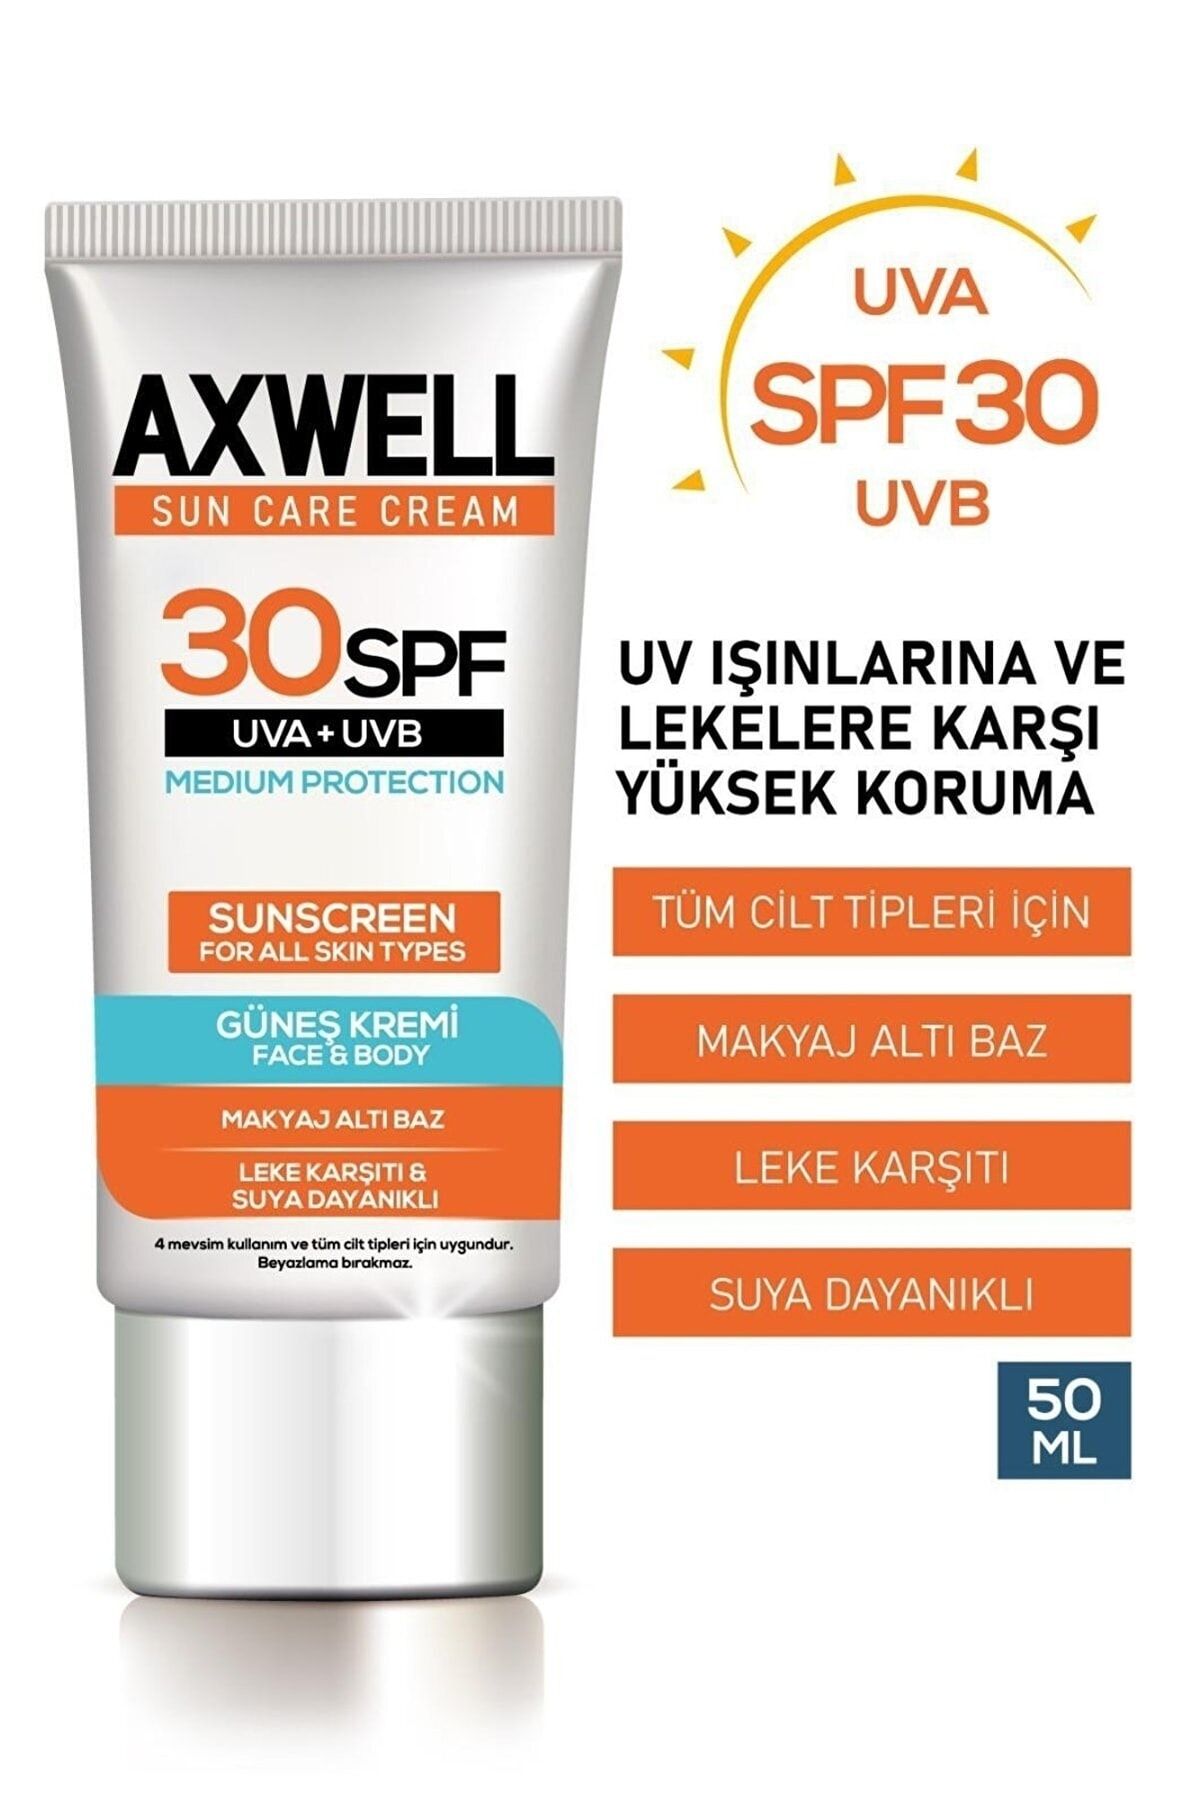 AXWELL Sun Care Cream Güneş Kremi Yüksek Koruma 30 Spf 50ml